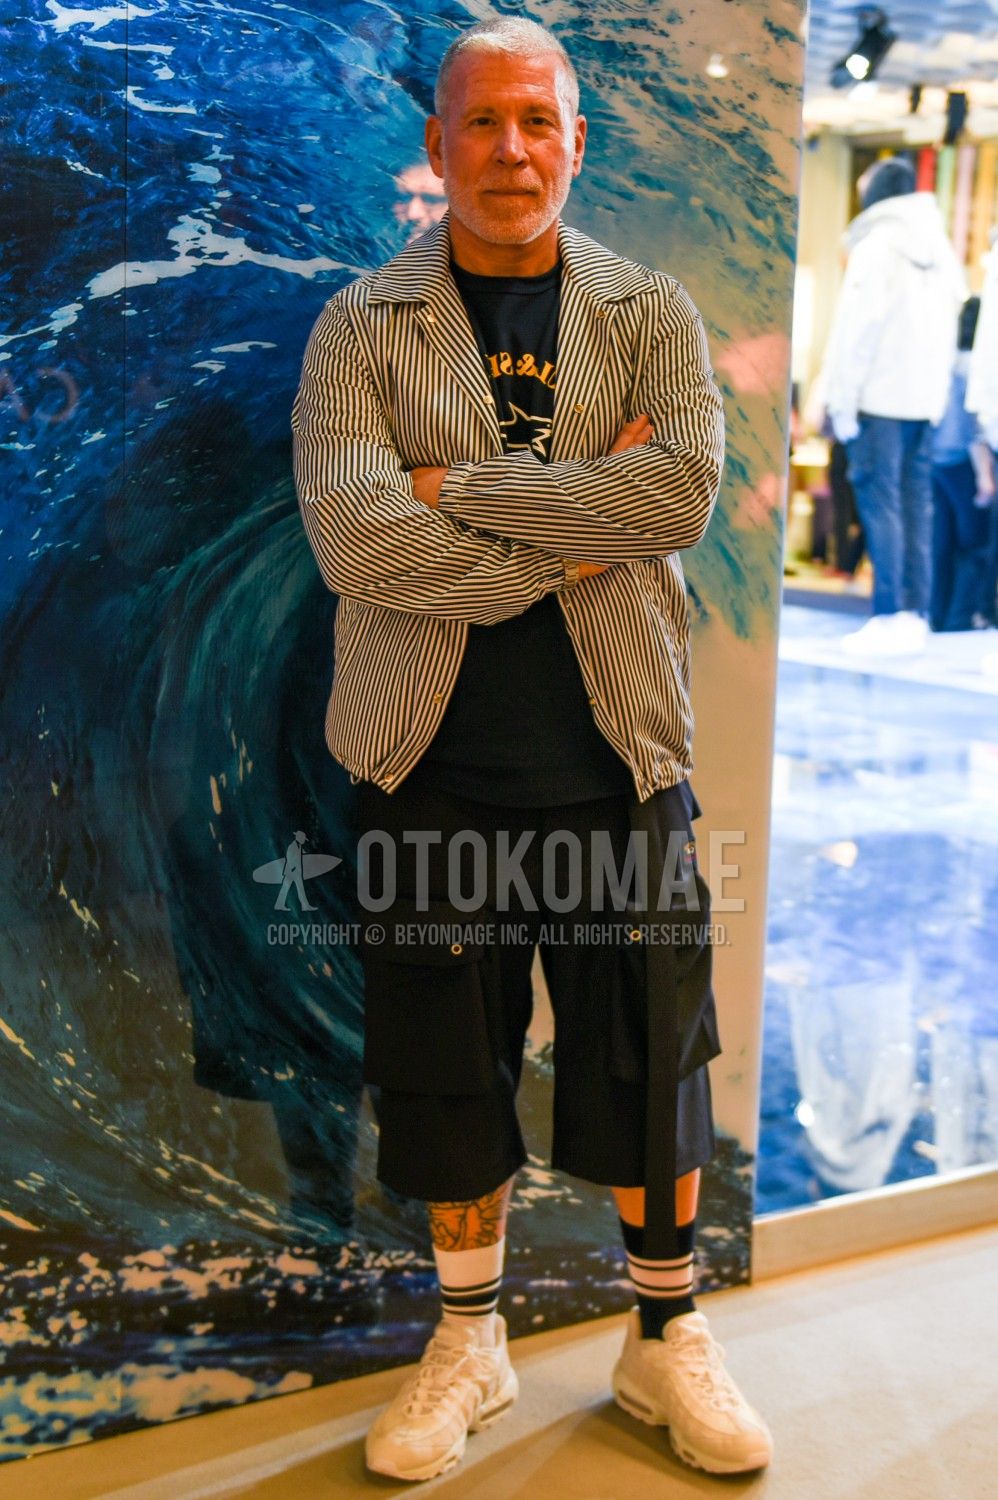 エアマックス コーデ特集 ナイキの人気スニーカーを使ったメンズ着こなしを紹介 メンズファッションメディア Otokomae 男前研究所